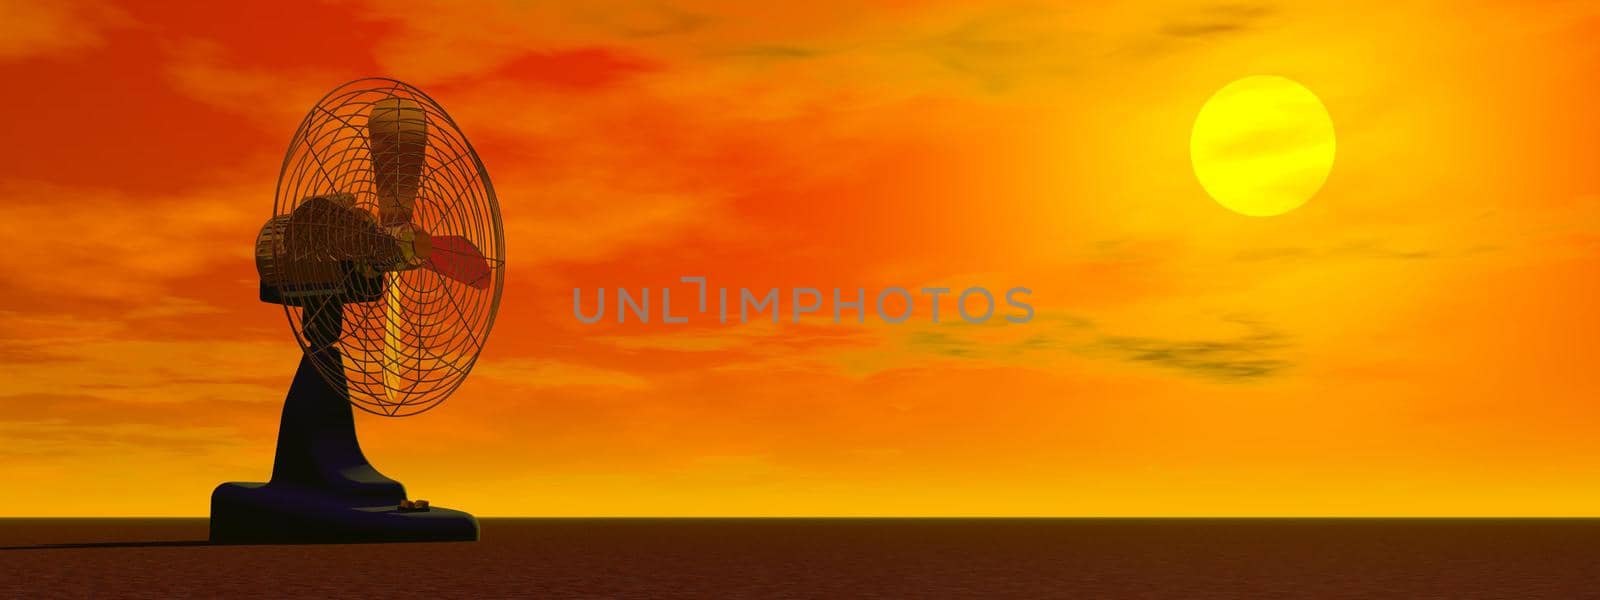 Fan by sunset - 3D render by Elenaphotos21